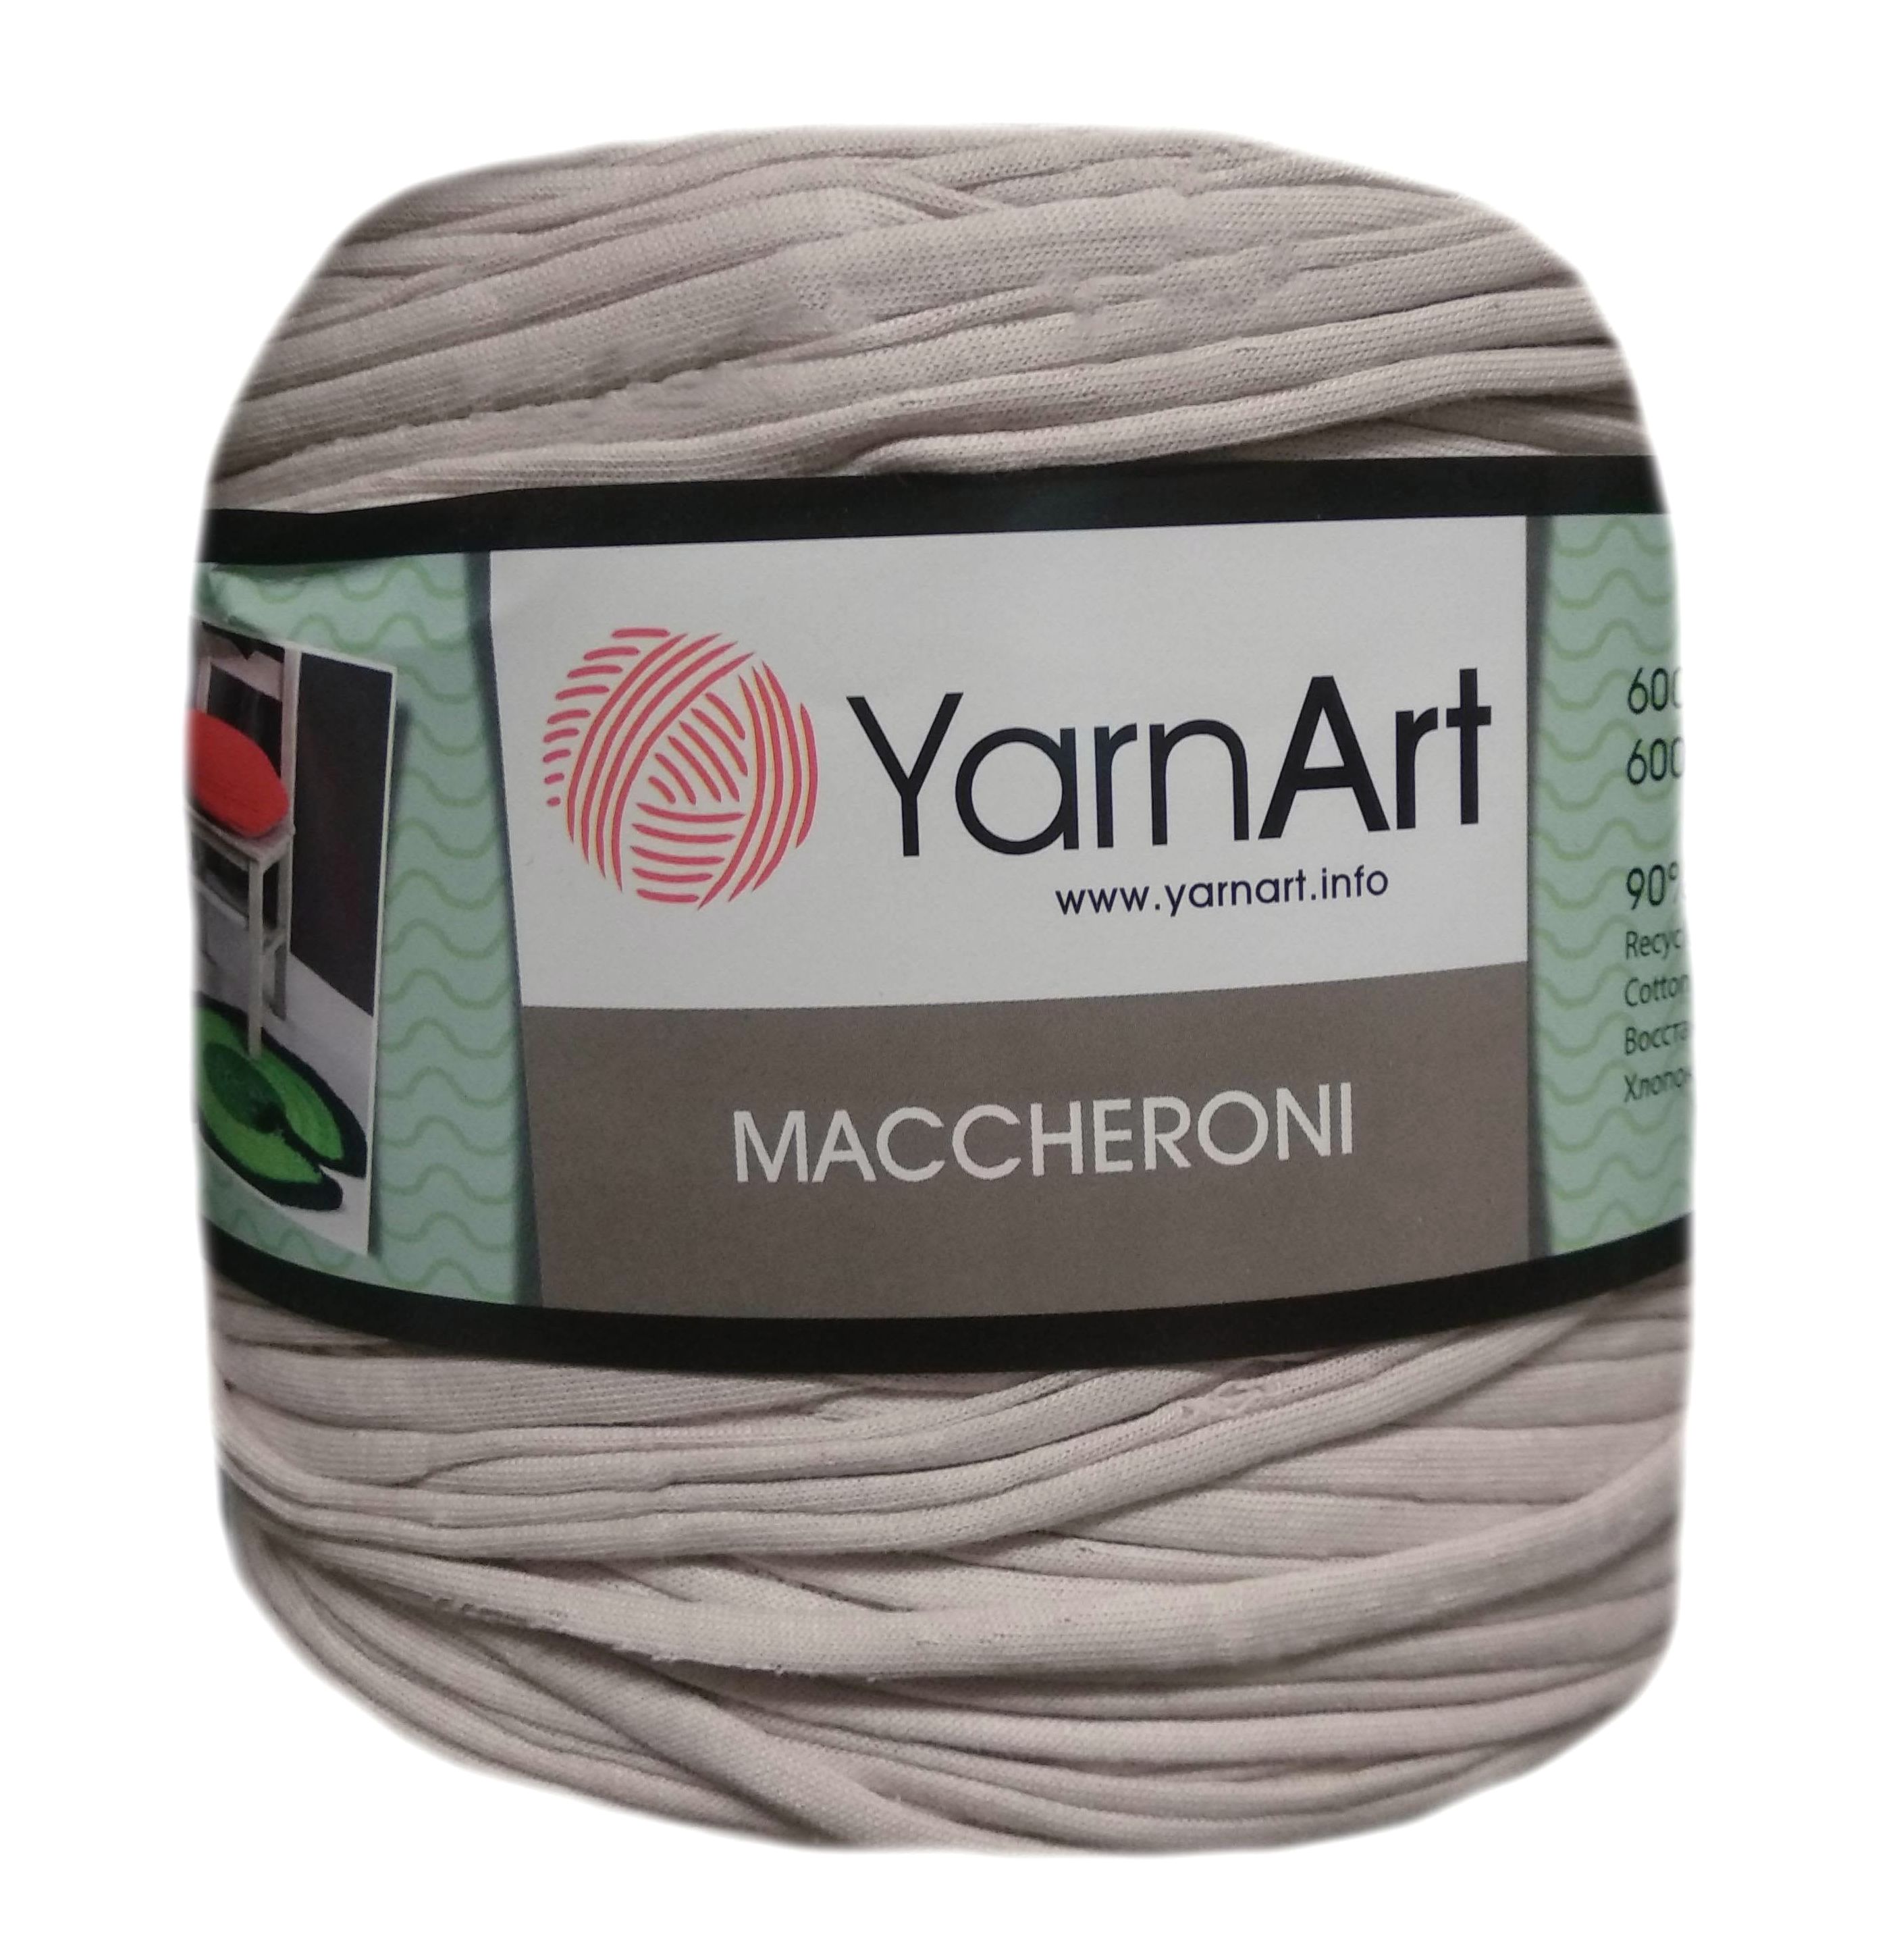 YarnArt MACCHERONI, világosszürke póló fonal.Tű 12-15 mm.